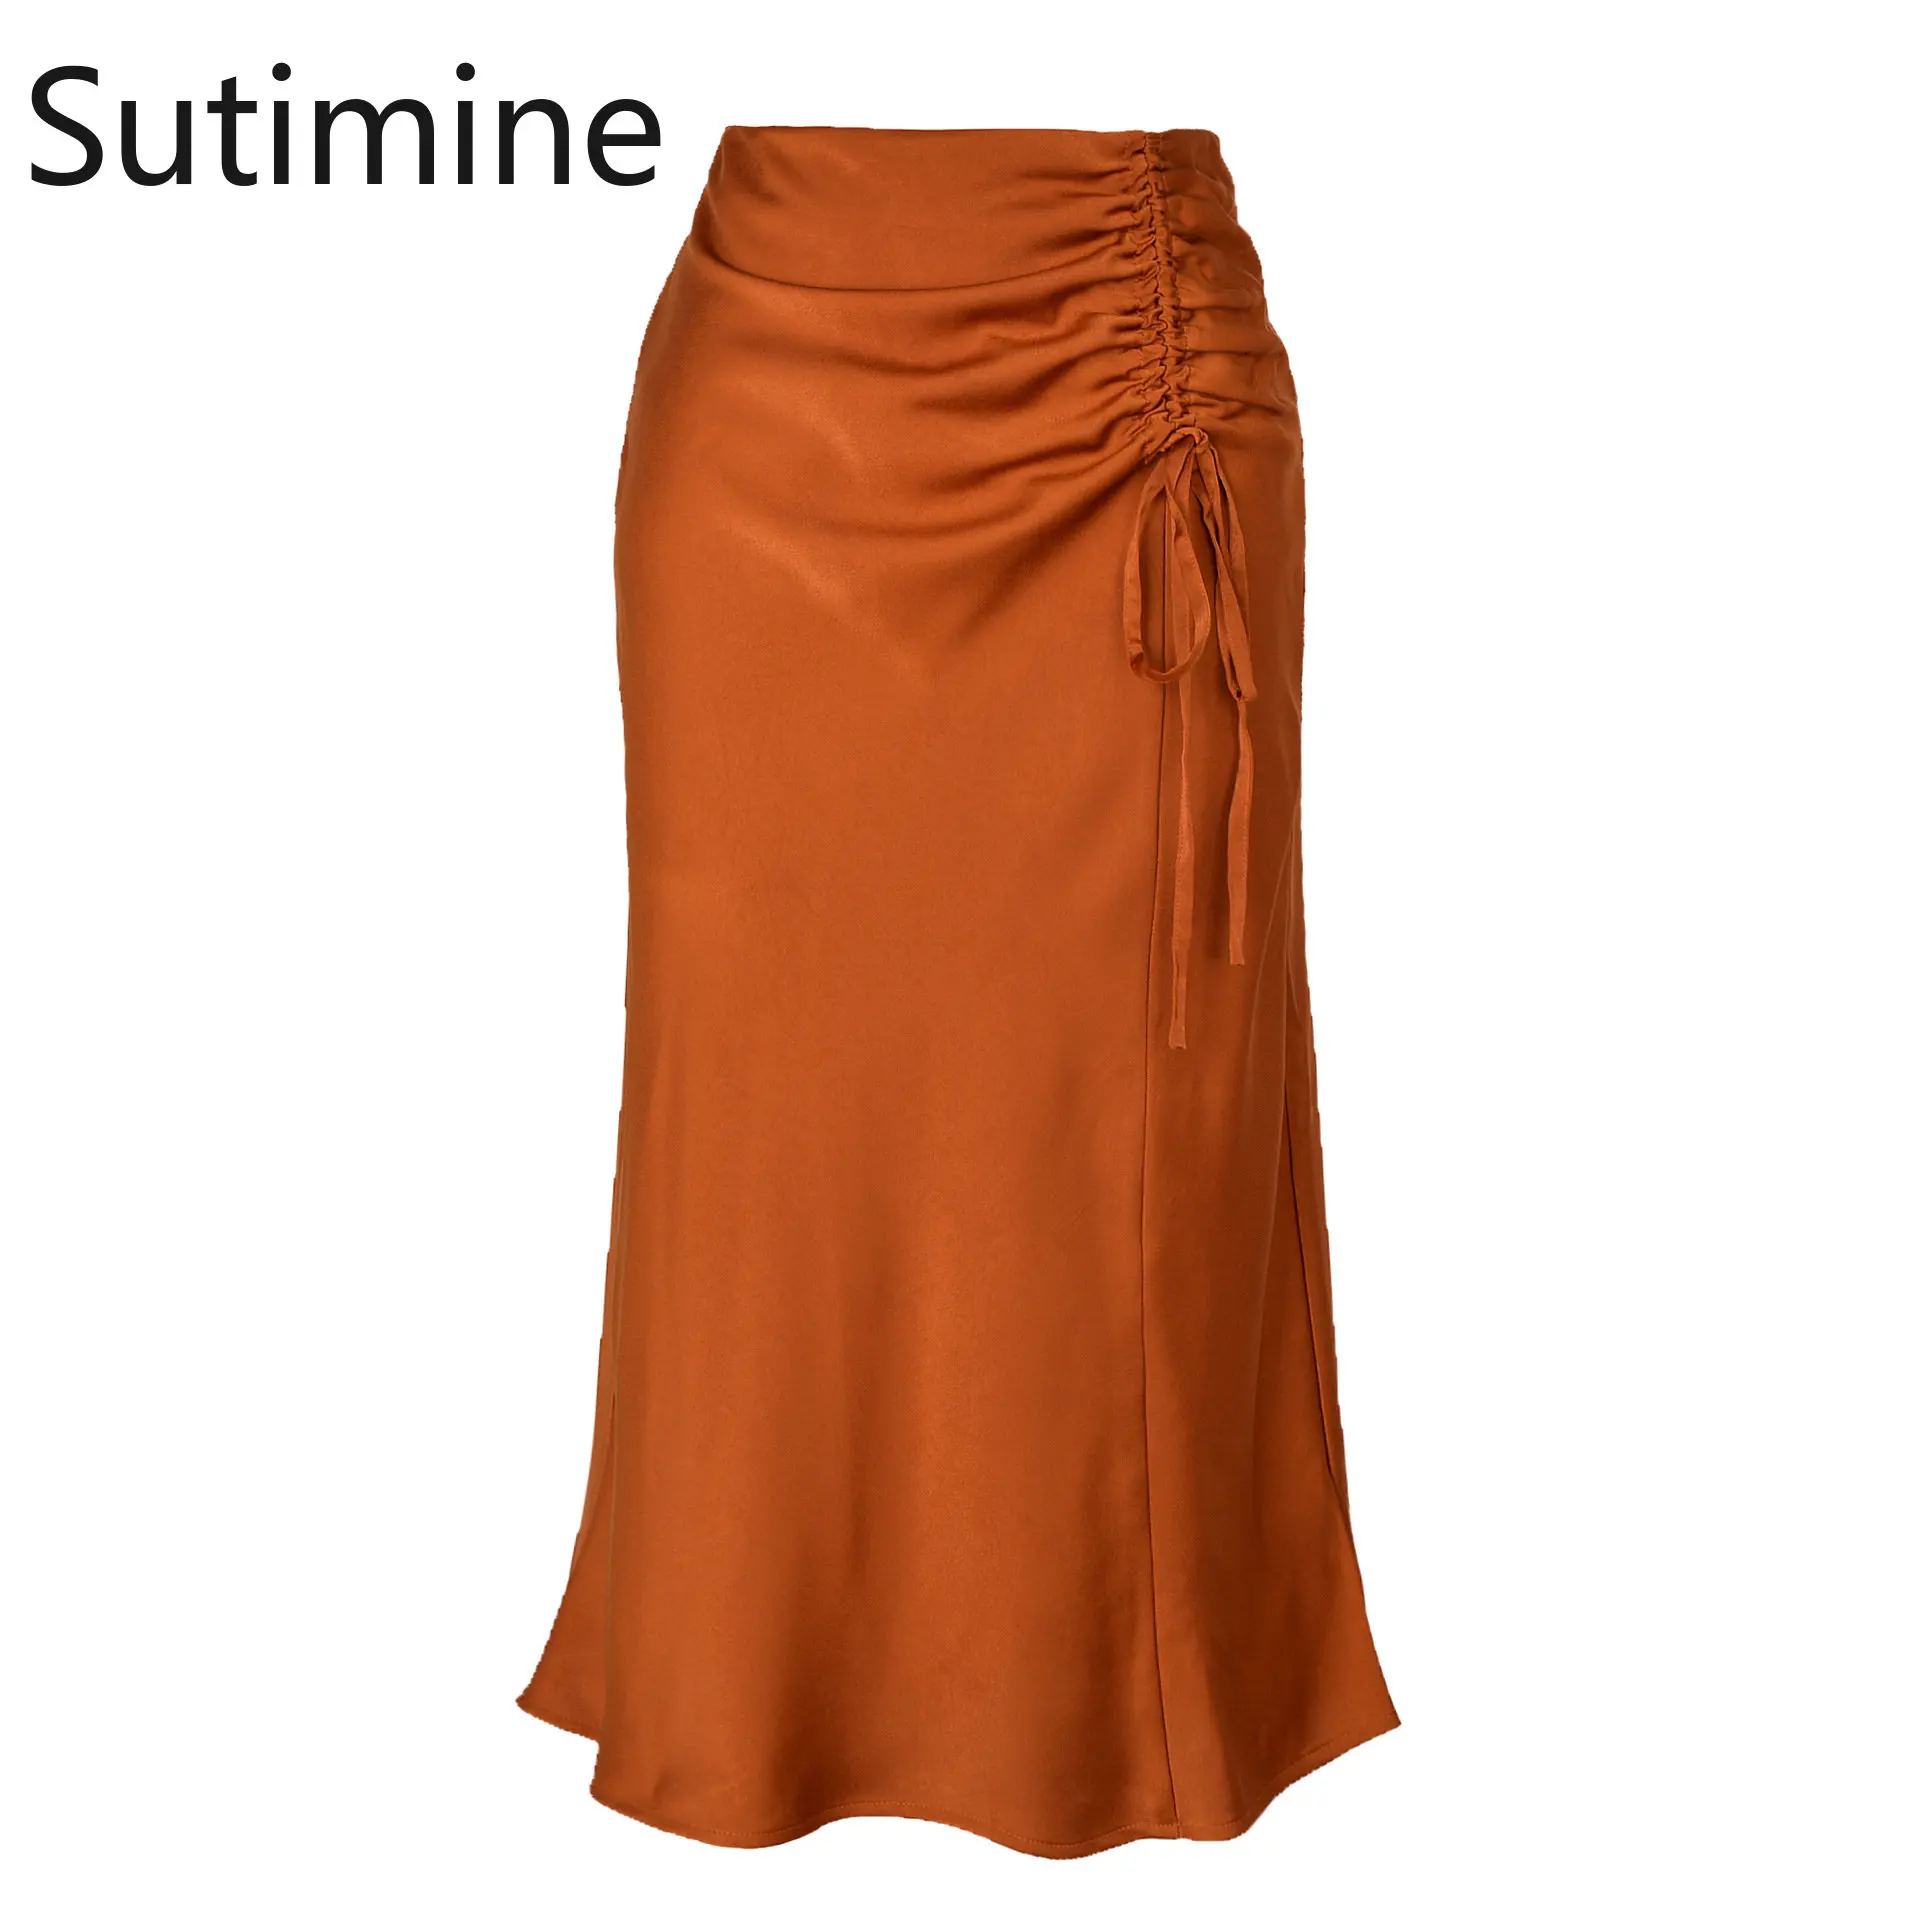 

Sutimine Summer Women Skirts Elegant Shirring Office Lady Satin Skirts for Women Slim Fit Mid-calf Length Orange Black Bud Skirt